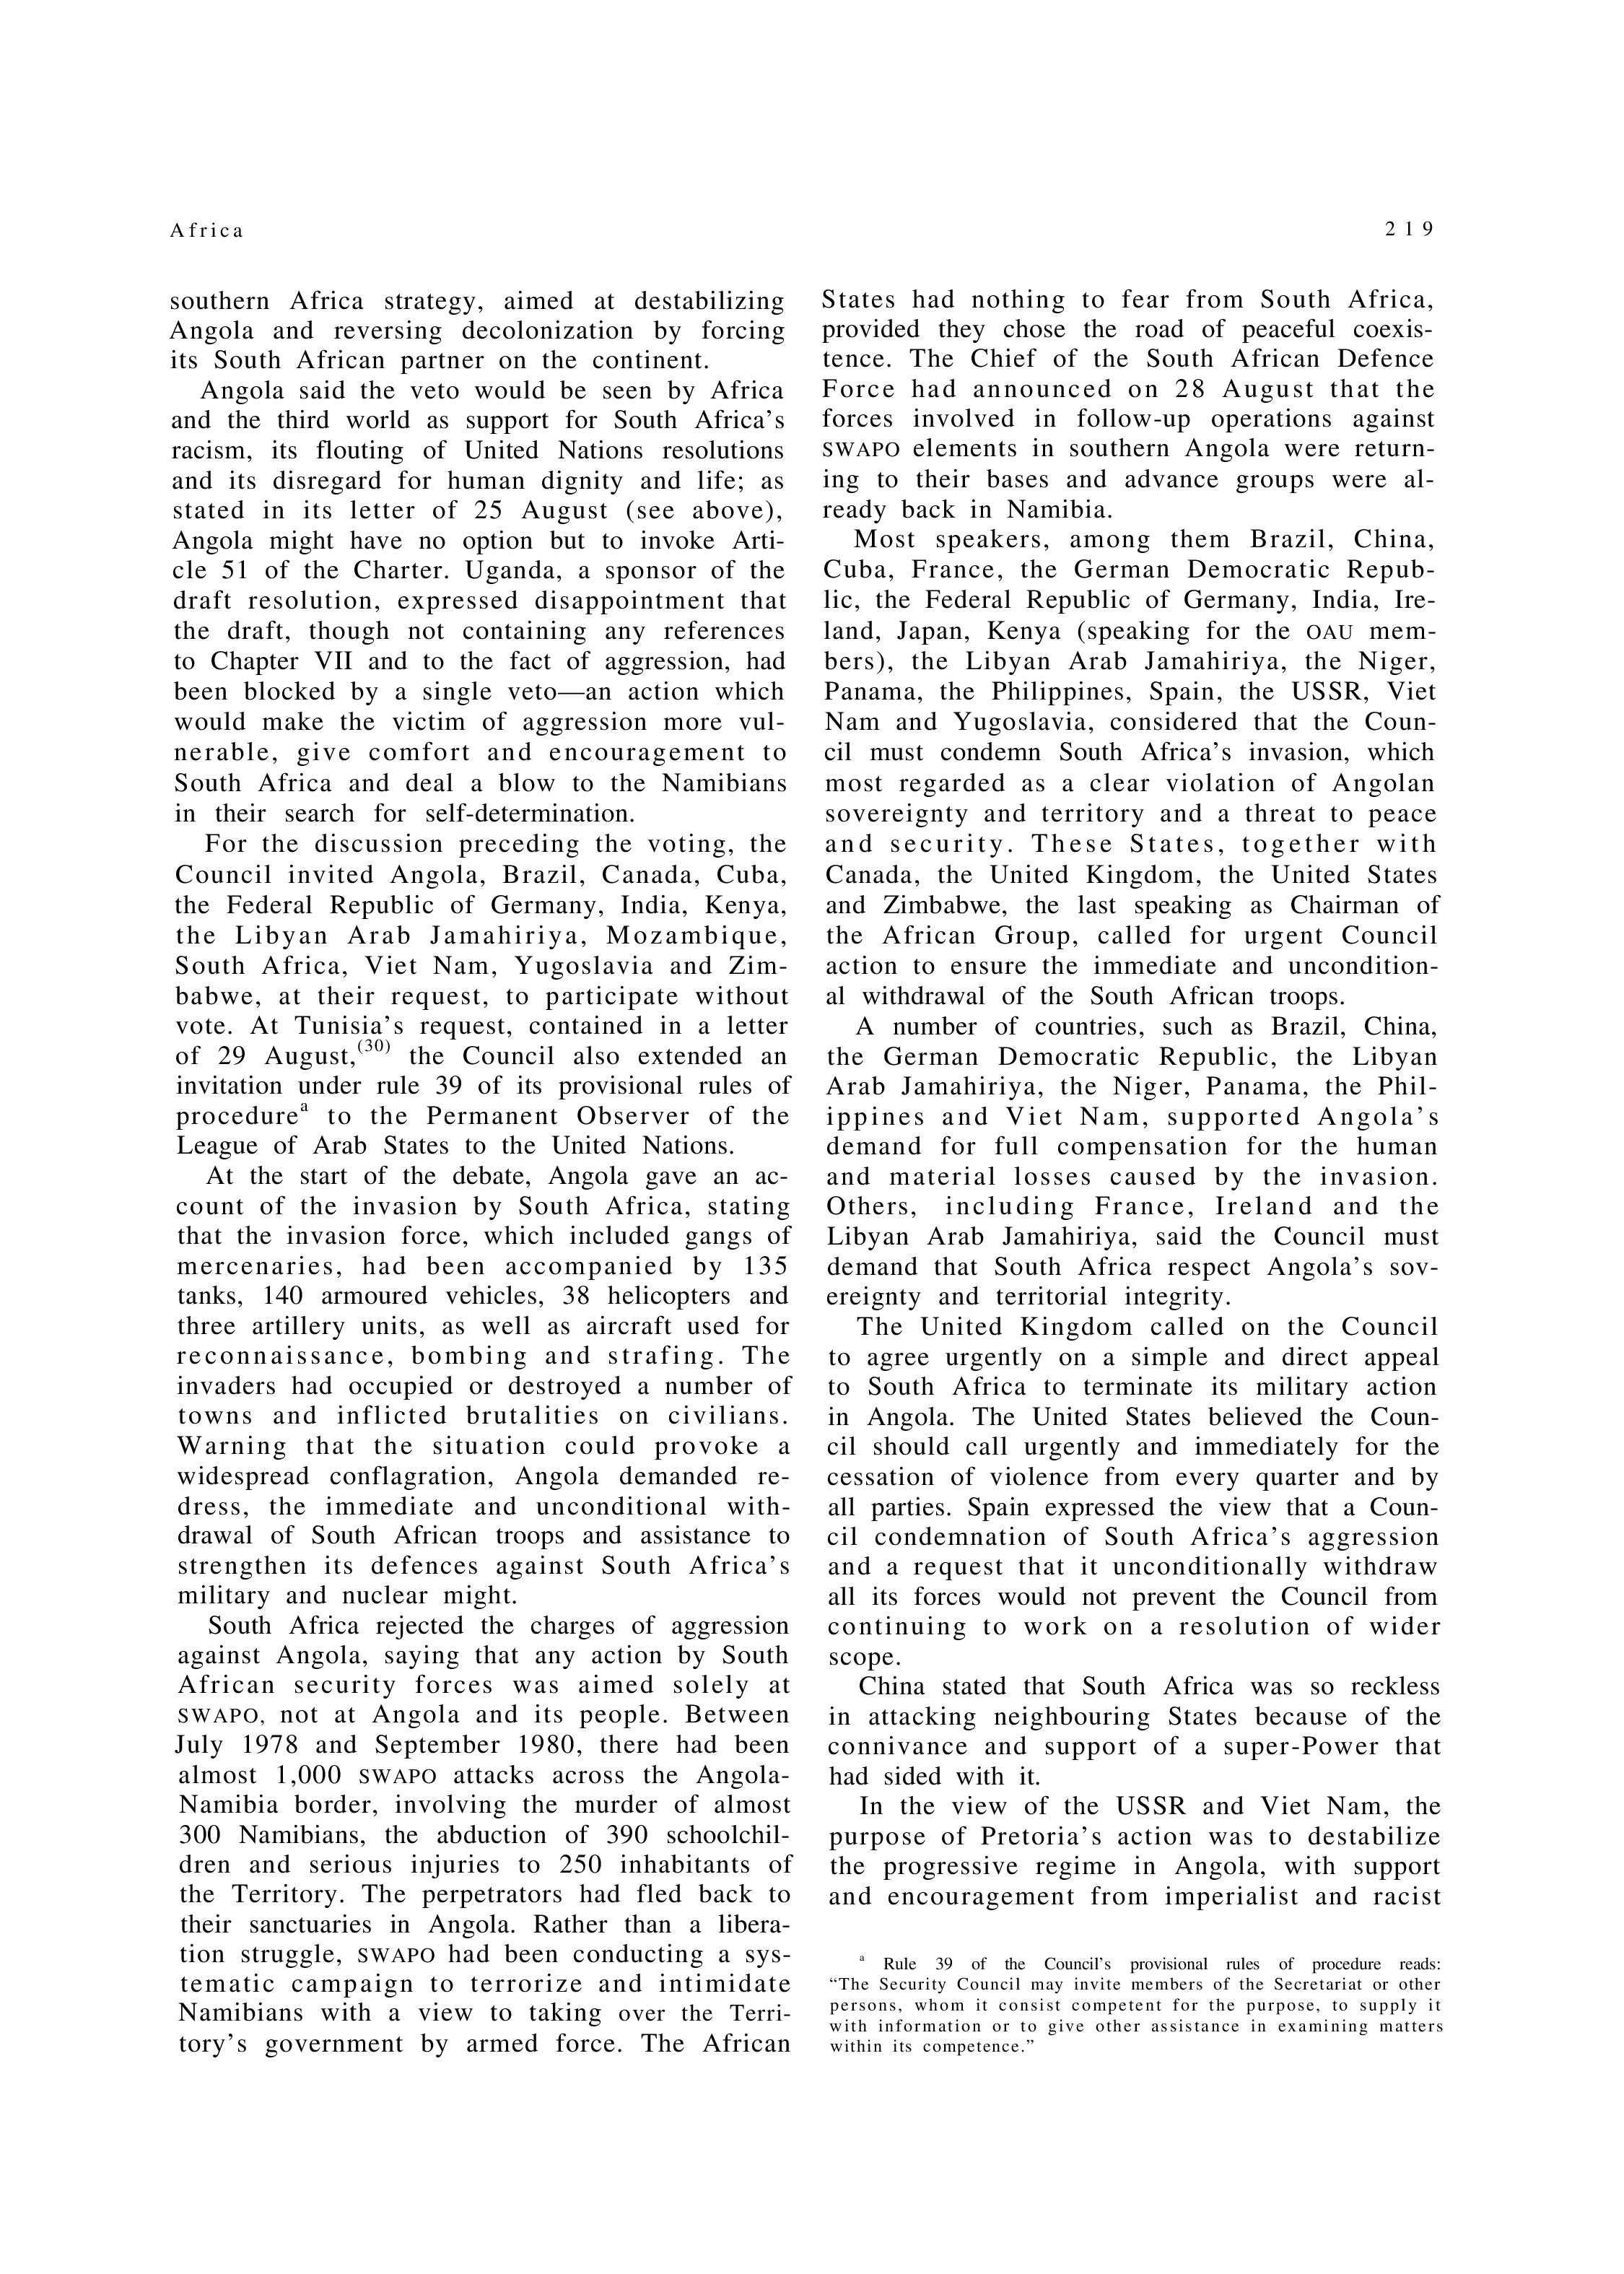 YUN Volume_Page 1981_231 excerpt